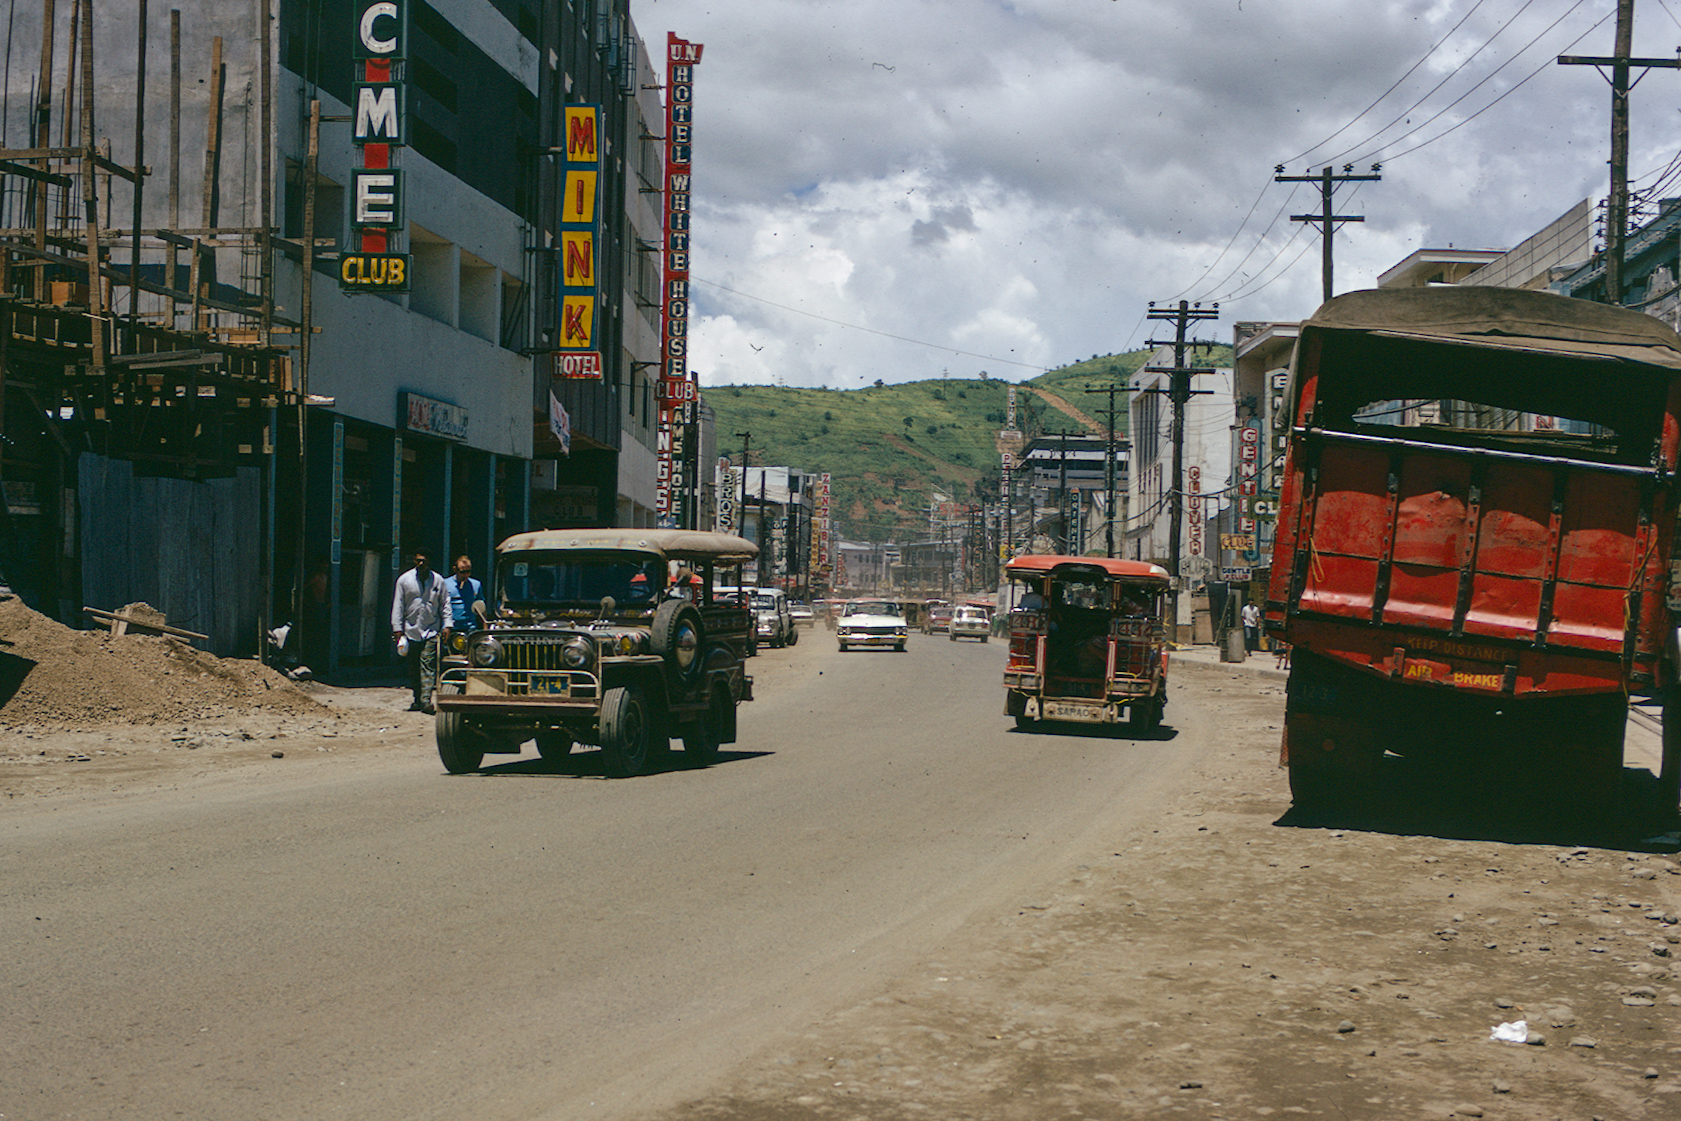 Olongapo City 1970